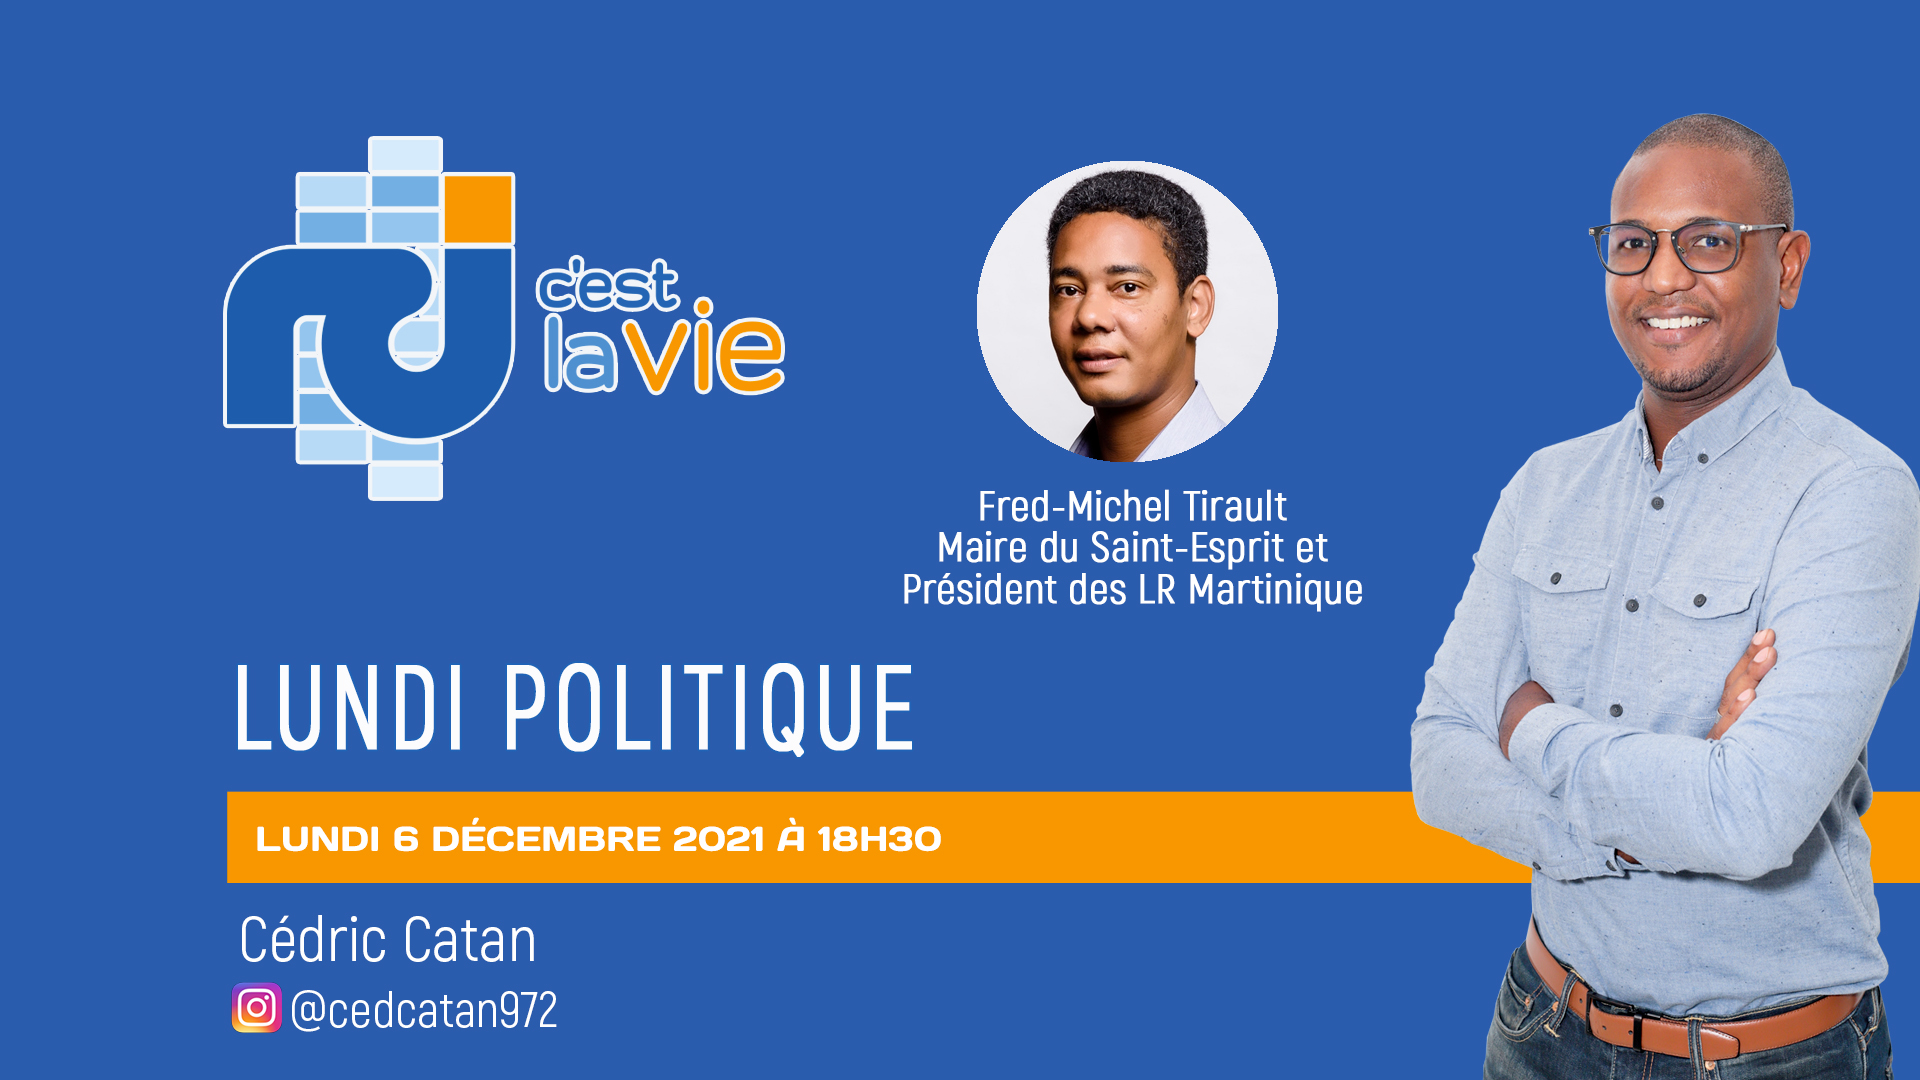     [VIDÉO] Fred-Michel Tirault, le président des Républicains de Martinique, était l’invité de Lundi Politique 

